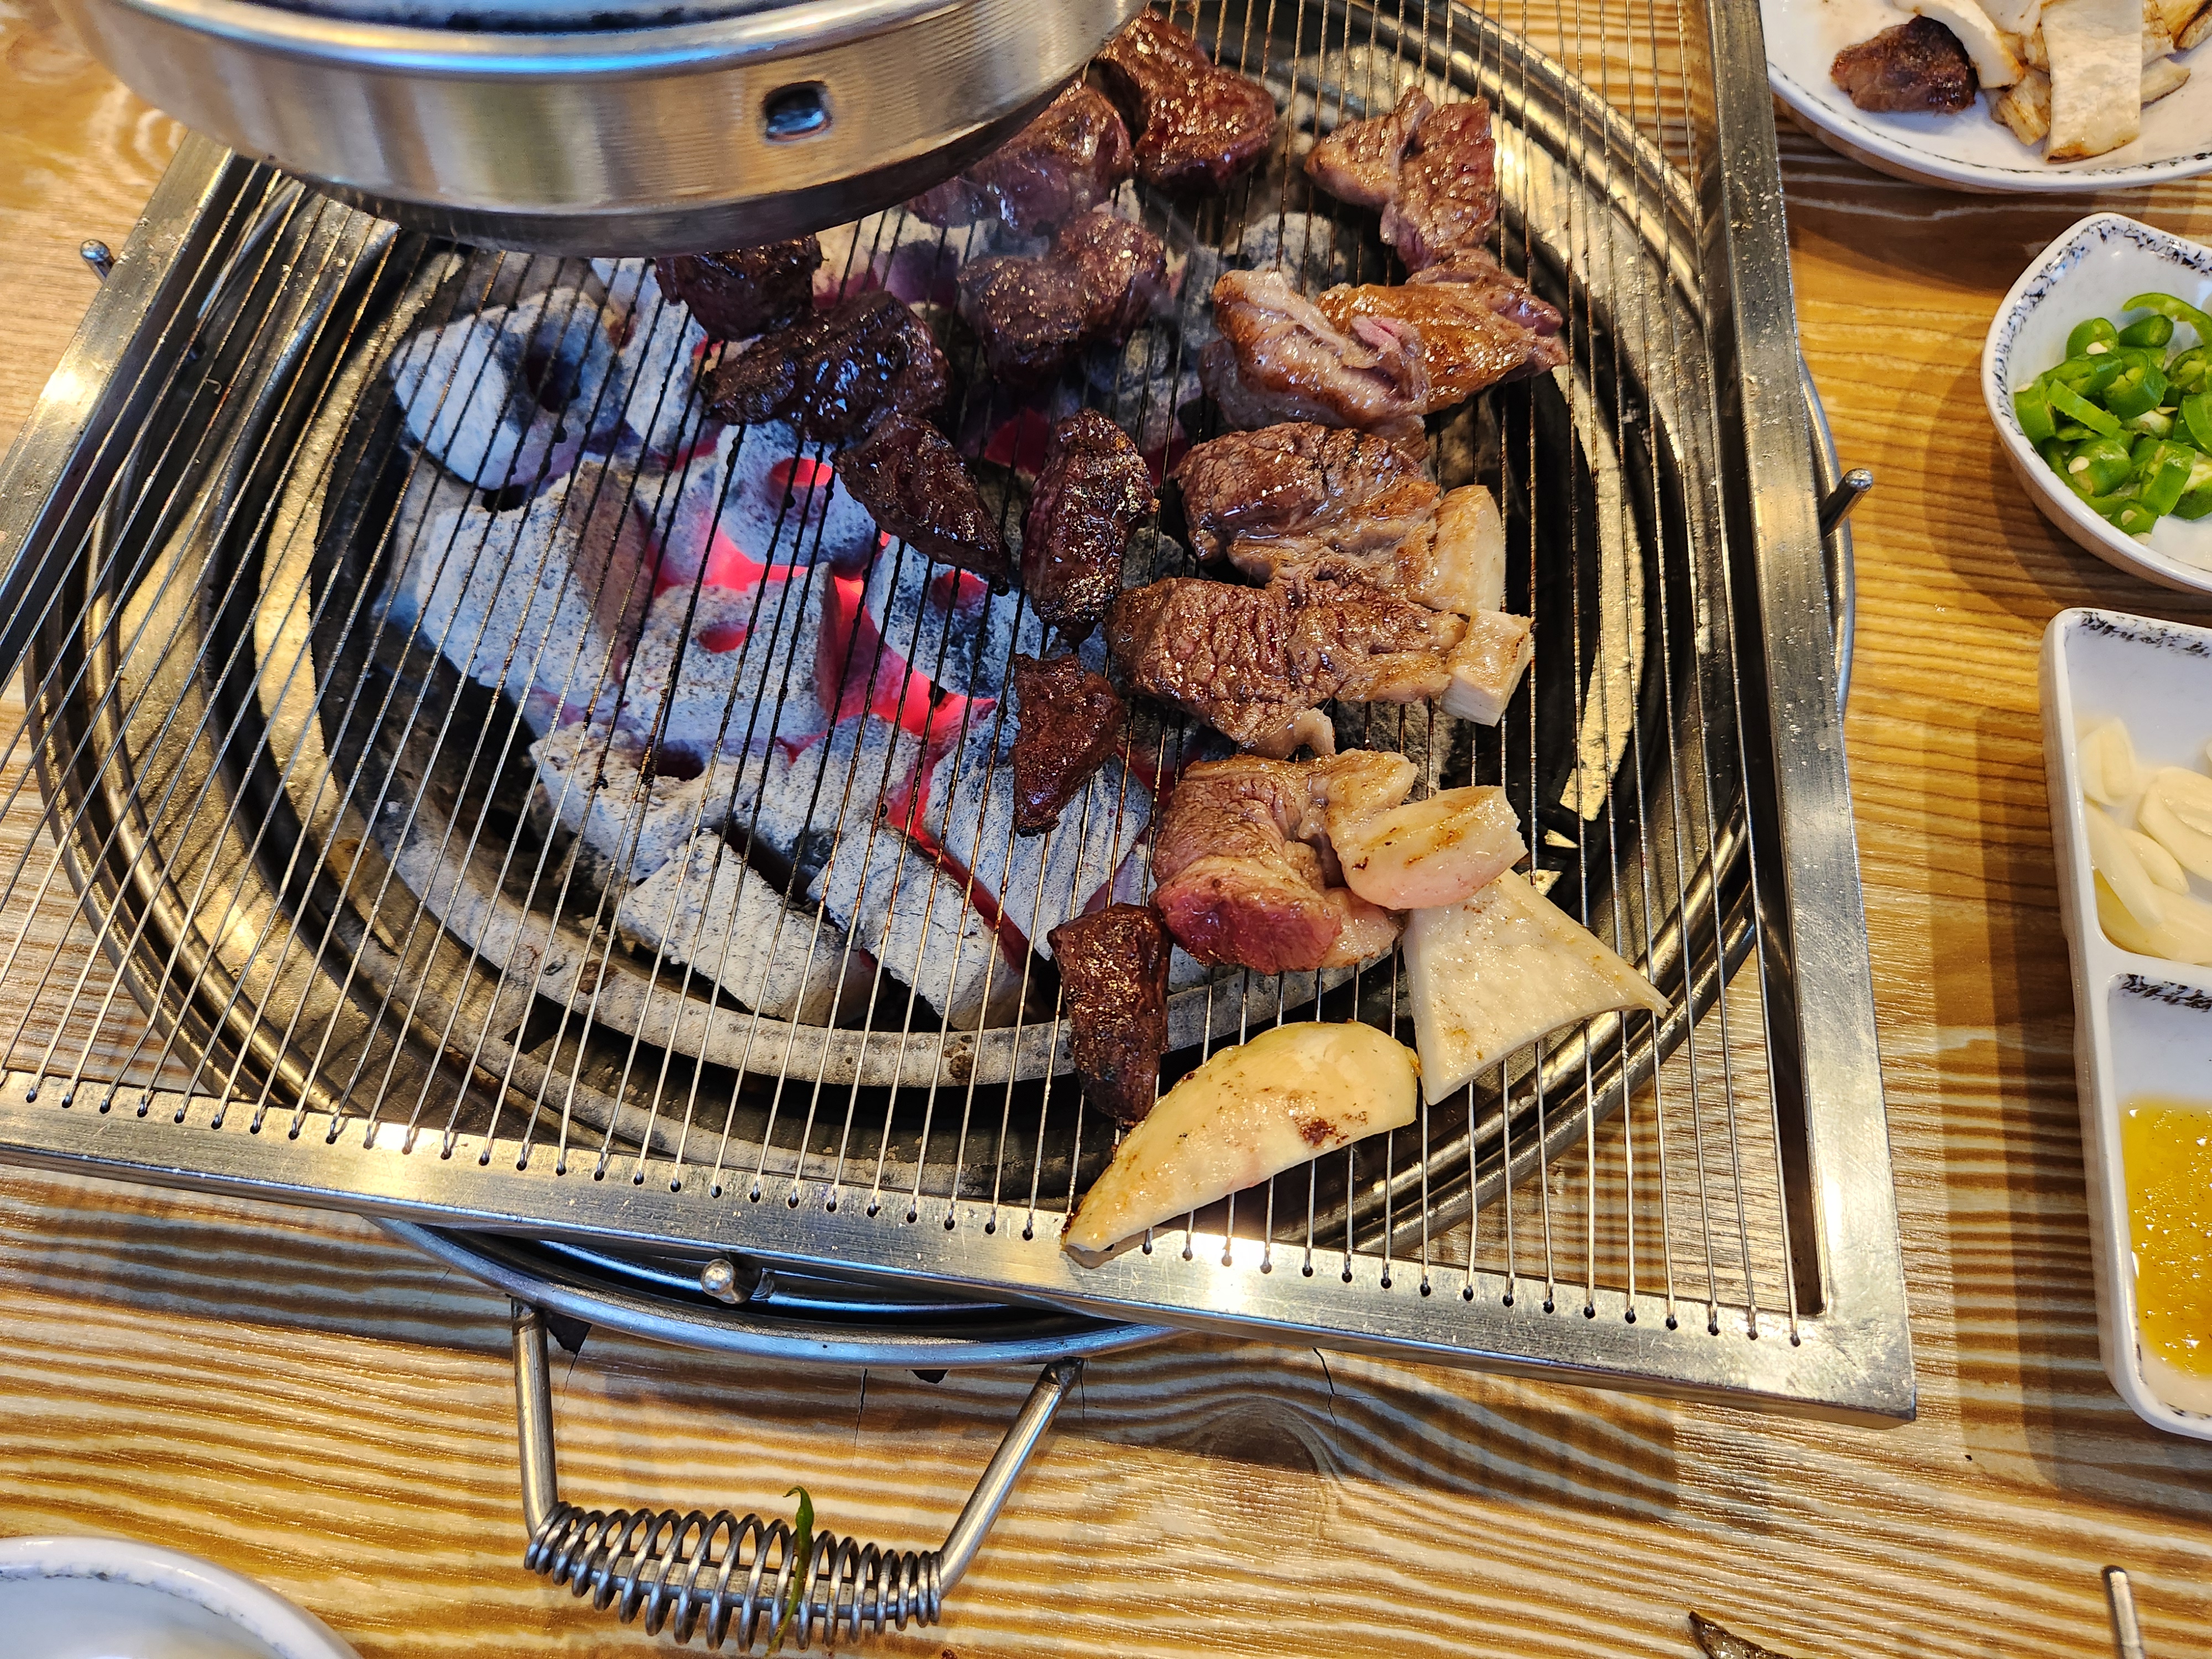 숯불 위에서 고기를 굽고 있다.